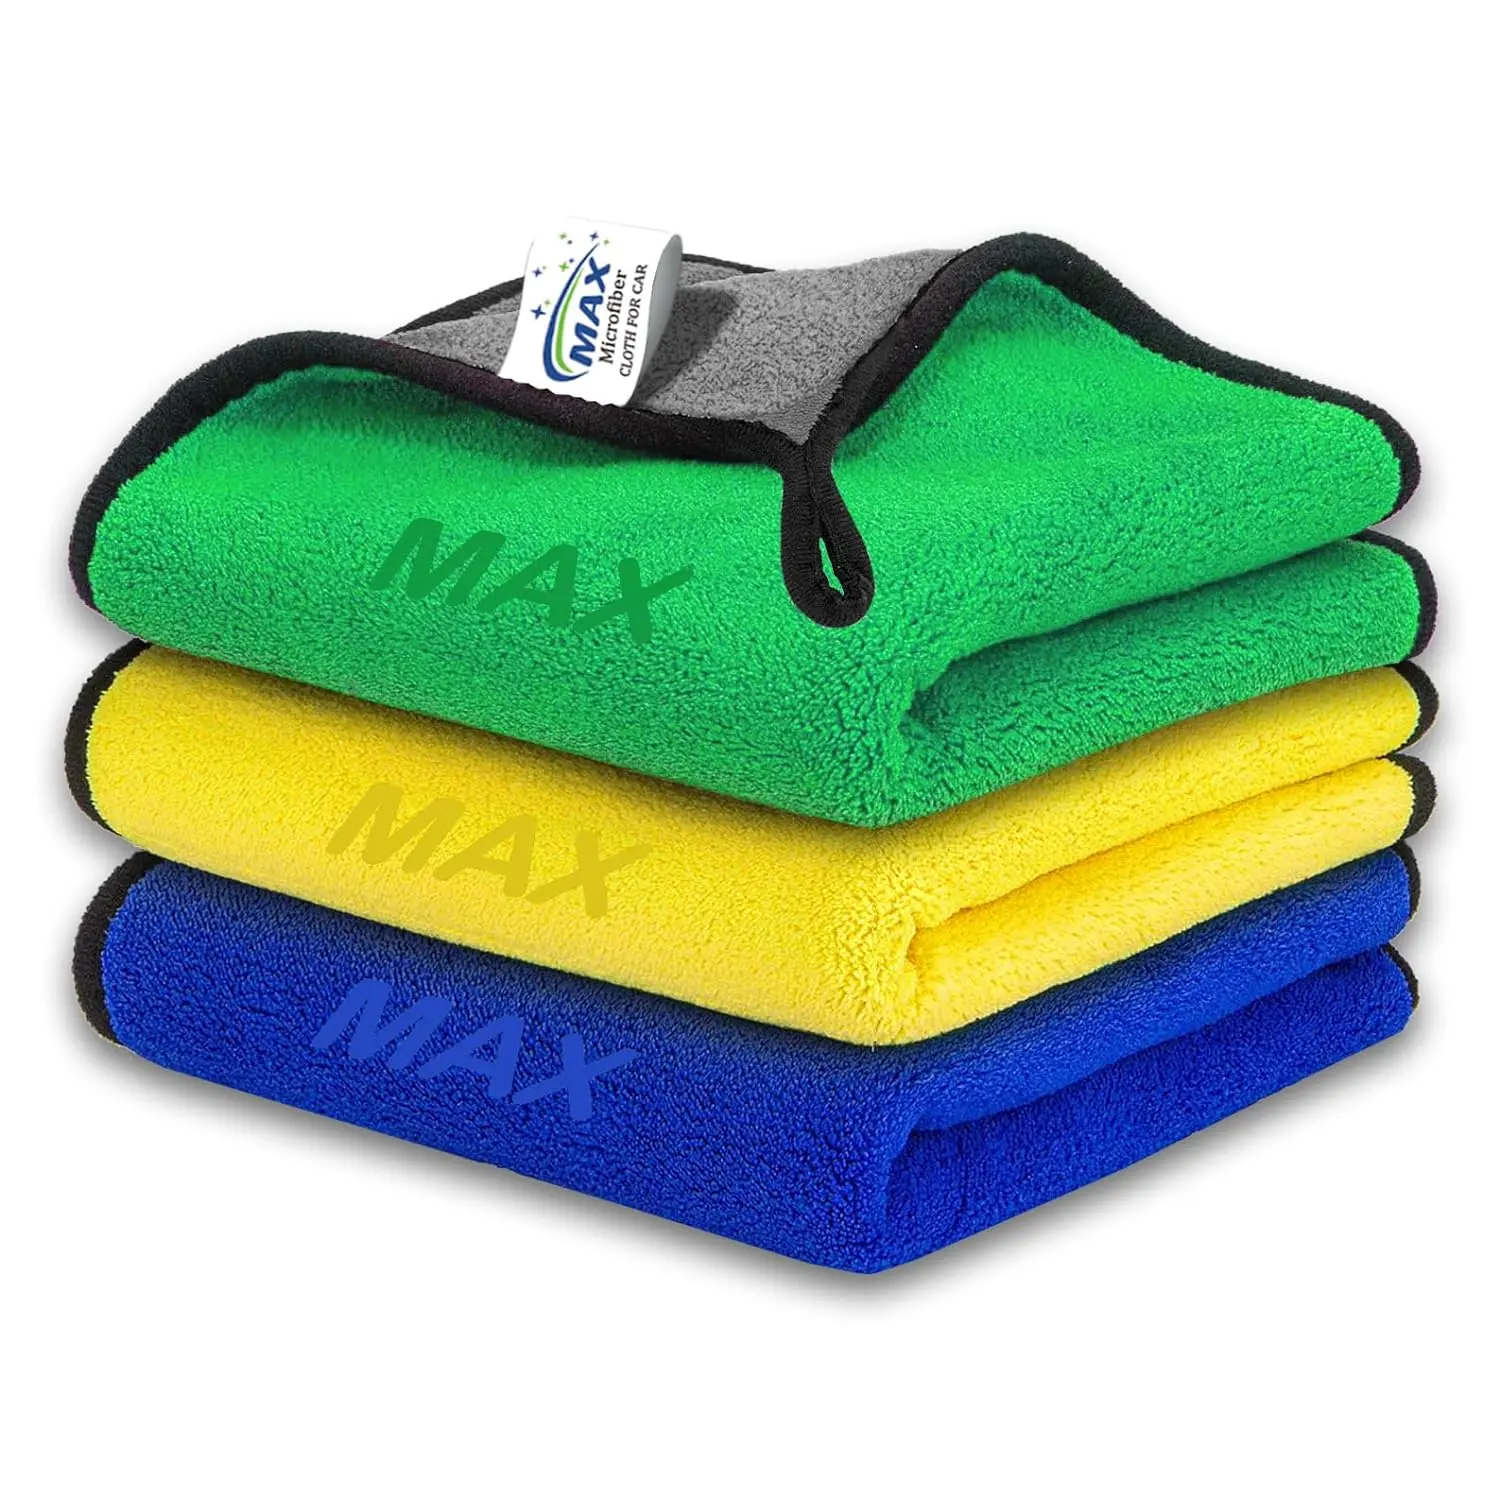 Temukan kain serat mikro berkualitas dengan berbagai warna 800 GSM 30x40 cm ukuran kepadatan tinggi, handuk mewah ekstra tebal untuk penggunaan cuci mobil